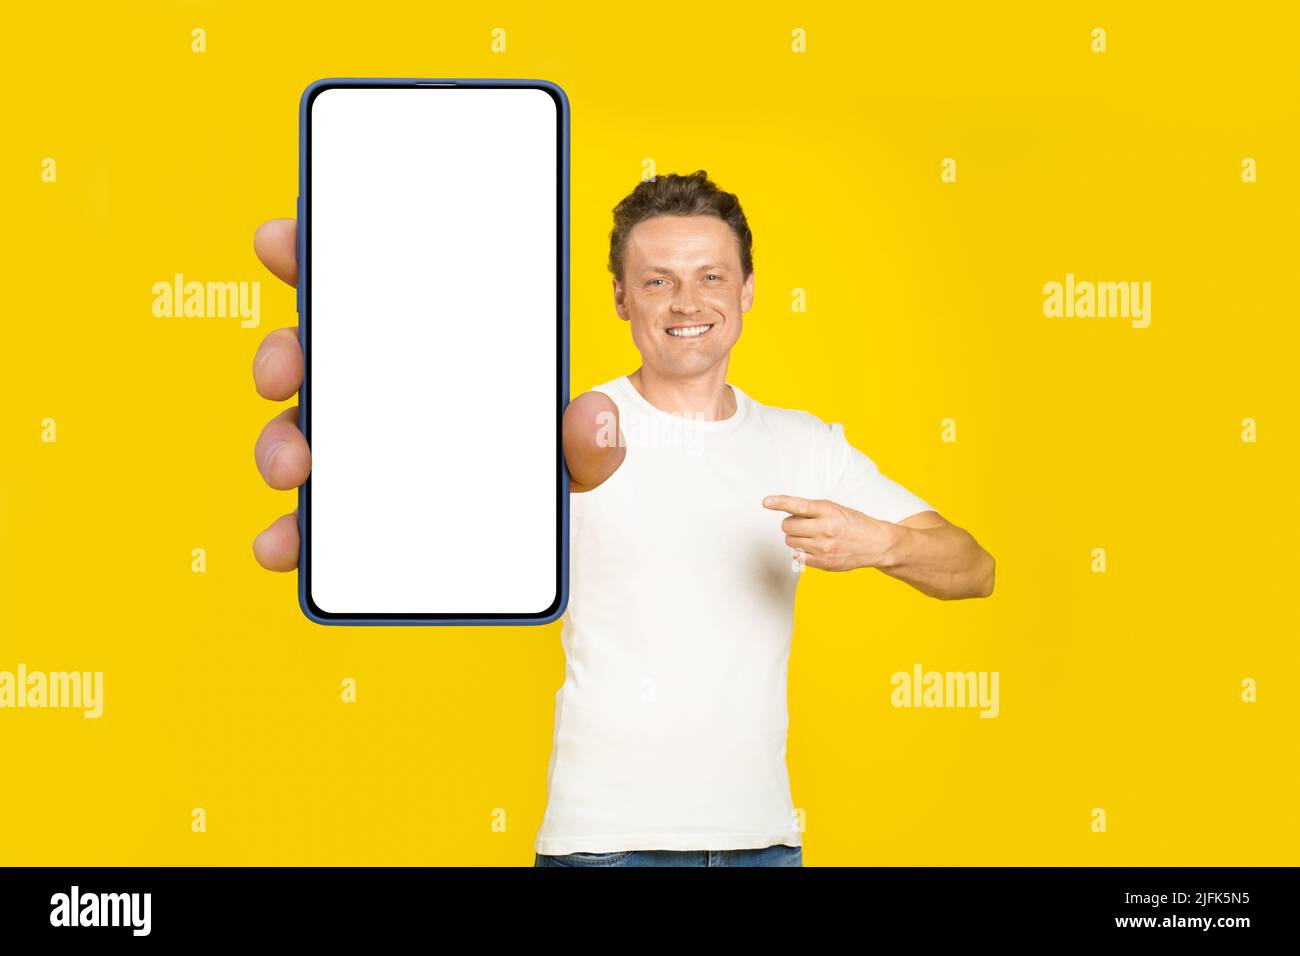 Bell'uomo biondo che punta a smartphone gigante con schermo bianco vuoto, indossando maglietta bianca e jeans display cellulare mock up isolato su sfondo giallo. Pubblicità app mobile. Foto Stock